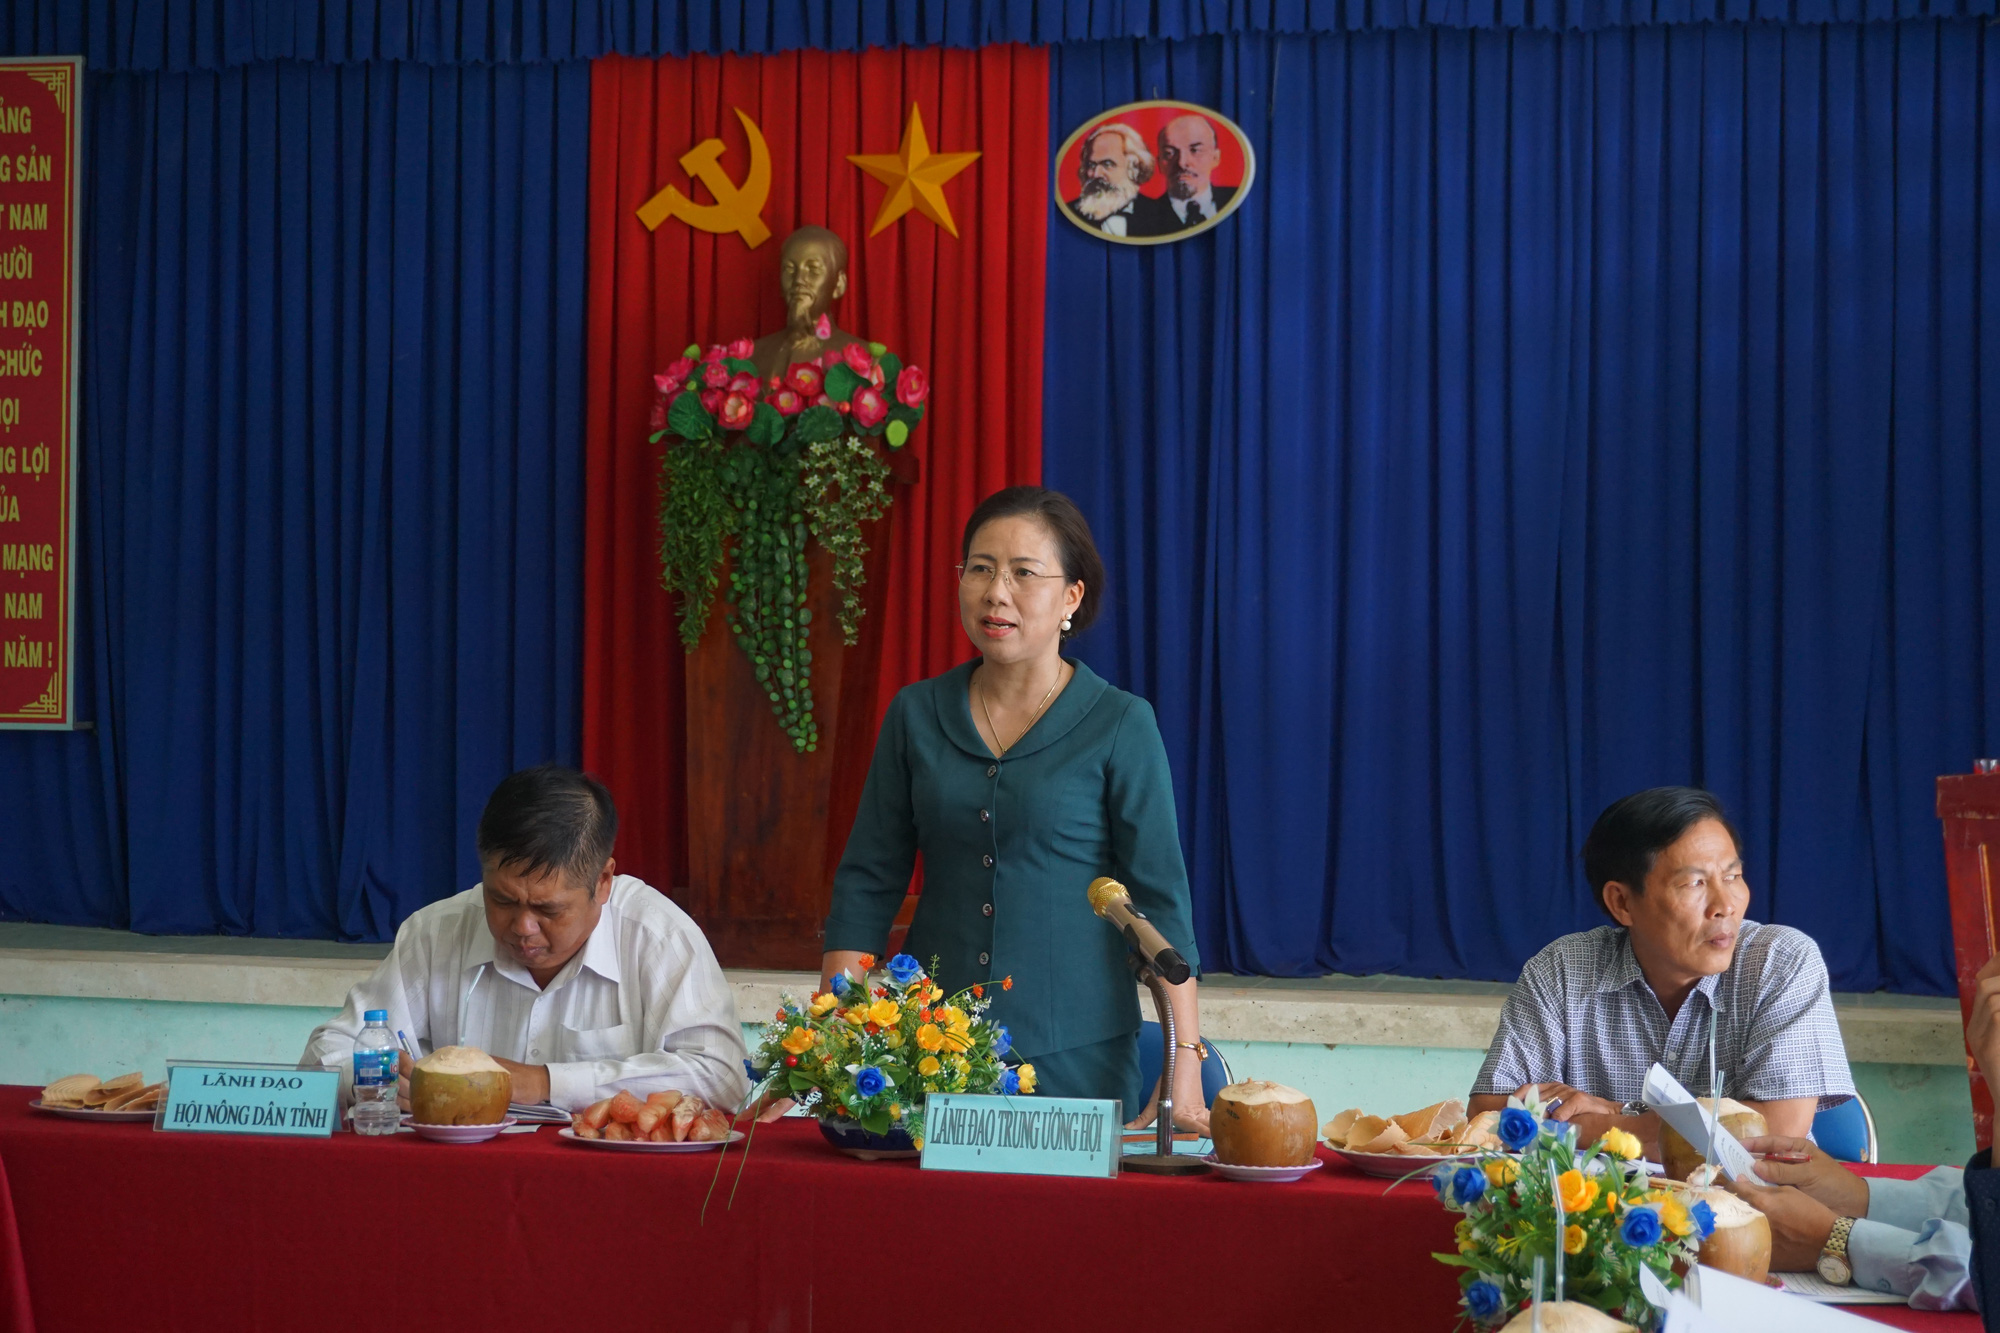 Phó Chủ tịch TƯ Hội NDVN Bùi Thị Thơm kiểm tra công tác Hội và phong trào nông dân tại Bến Tre - Ảnh 1.